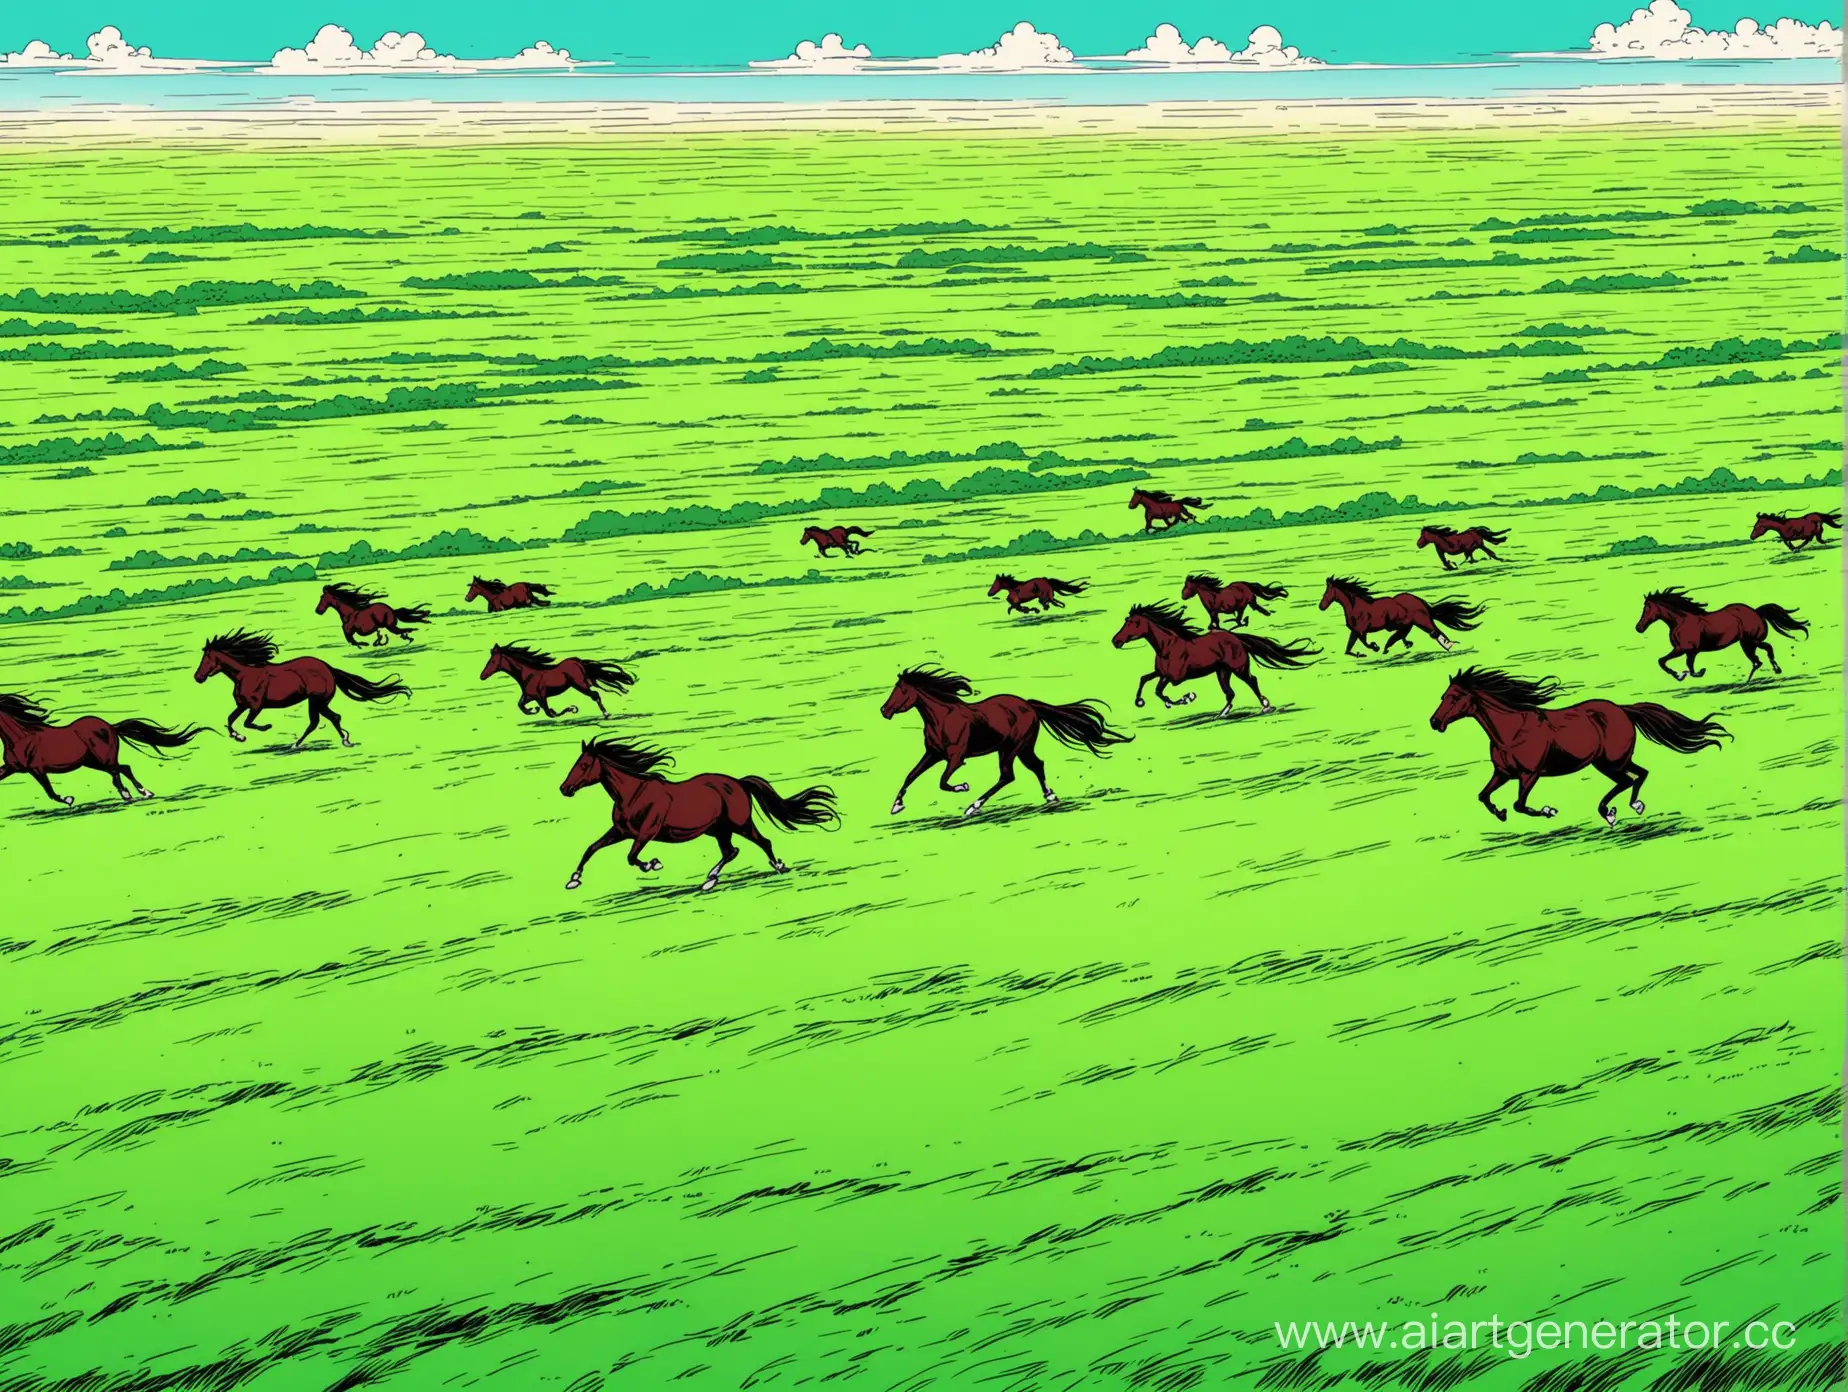 в казахских зеленых степях скакает тысяча лошадей без людей, в стиле комикс